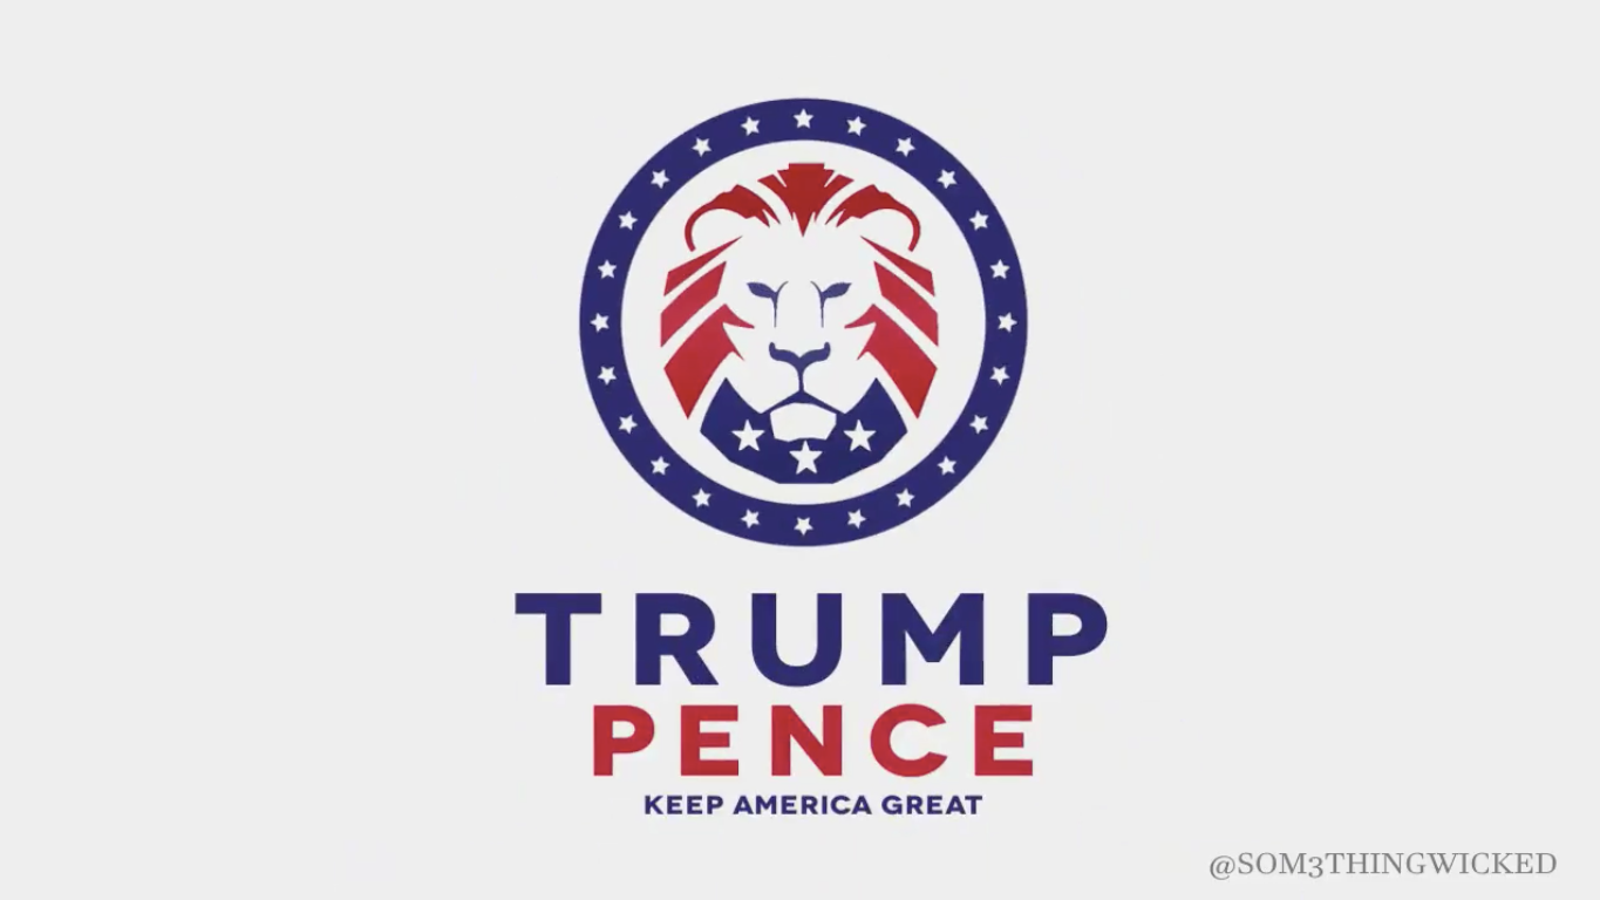 Trump 2020 Campaign Video Includes White Nationalist Fan Logo